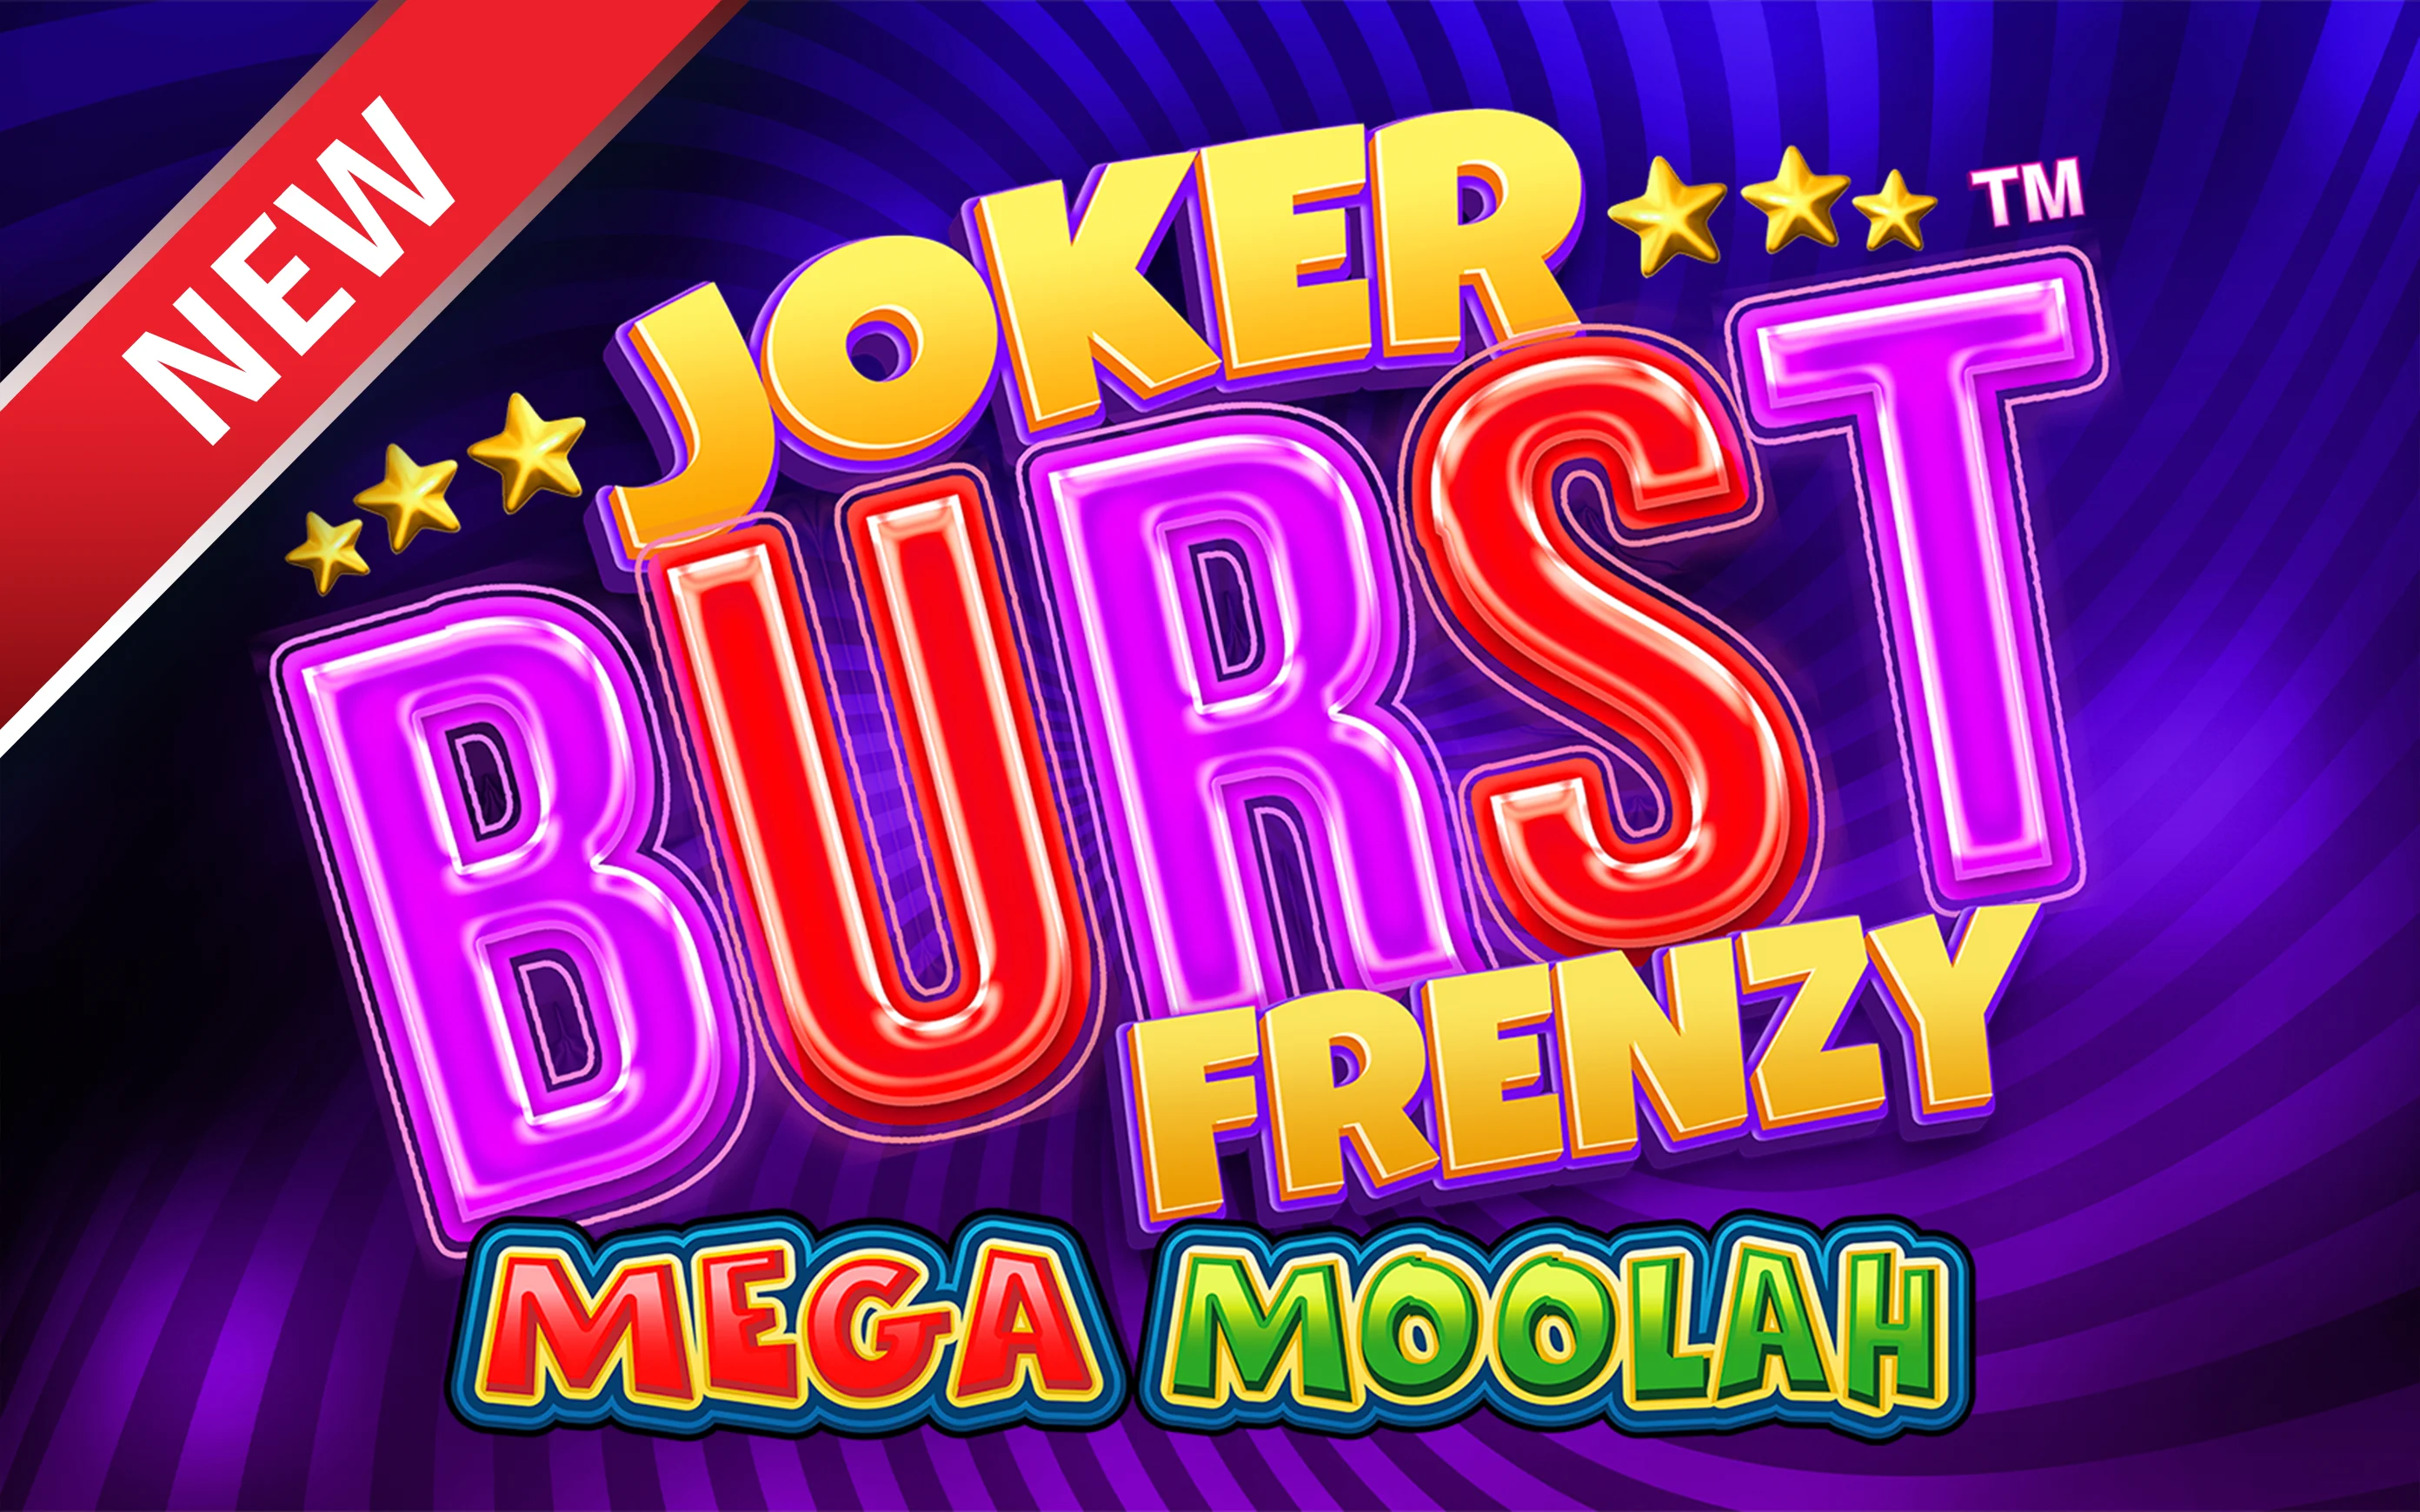 Starcasino.be online casino üzerinden Joker Burst Frenzy Mega Moolah oynayın